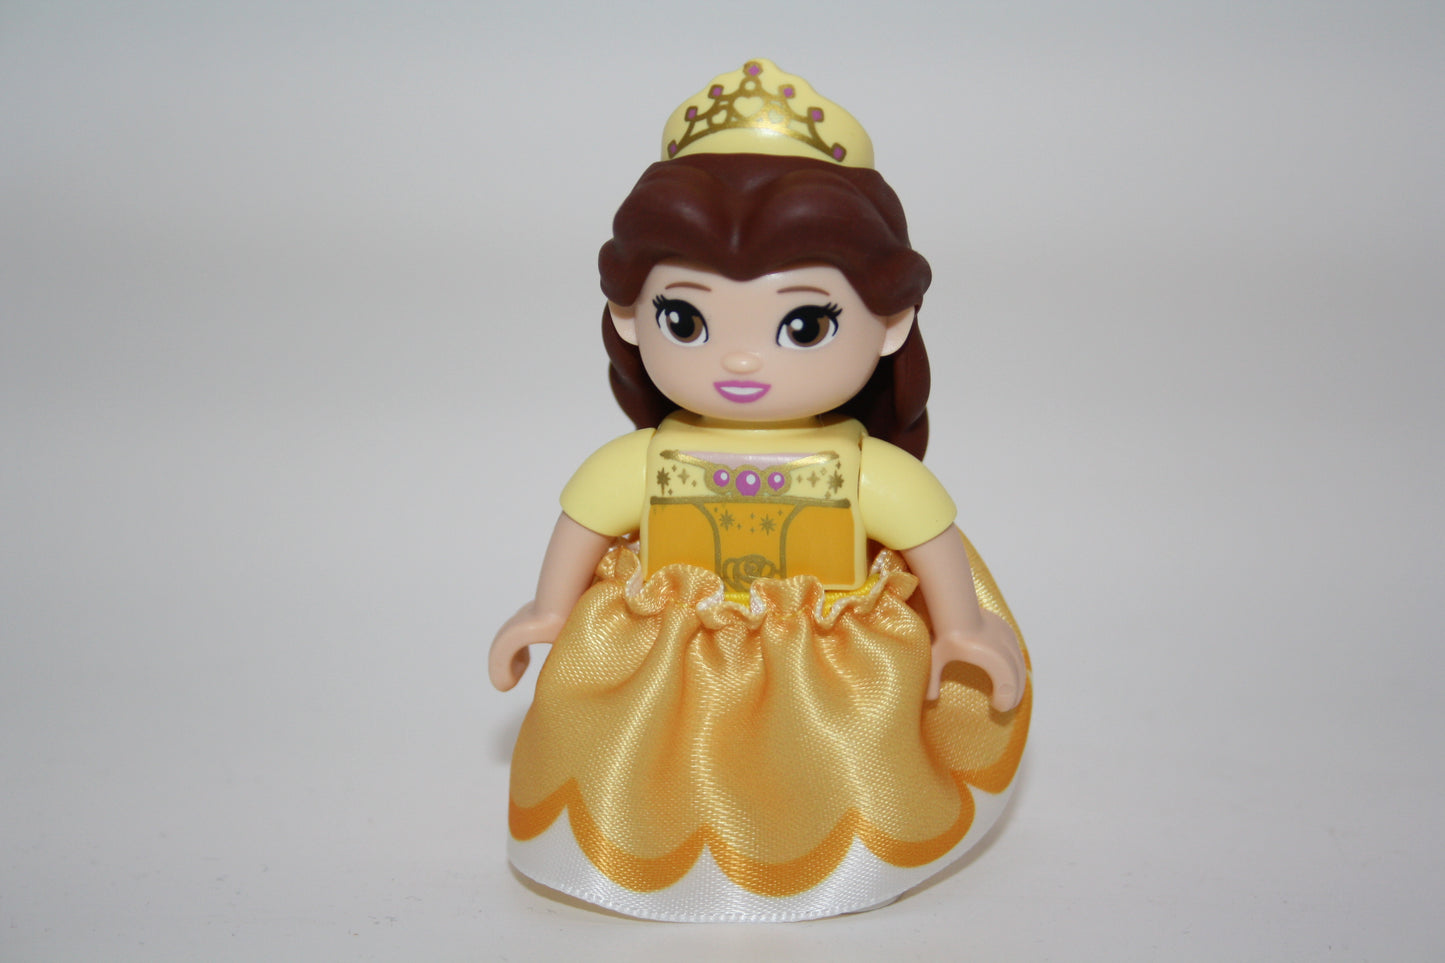 Duplo - Belle im Ballkleid aus die schöne und das Biest - Disney Figur - neue Serie